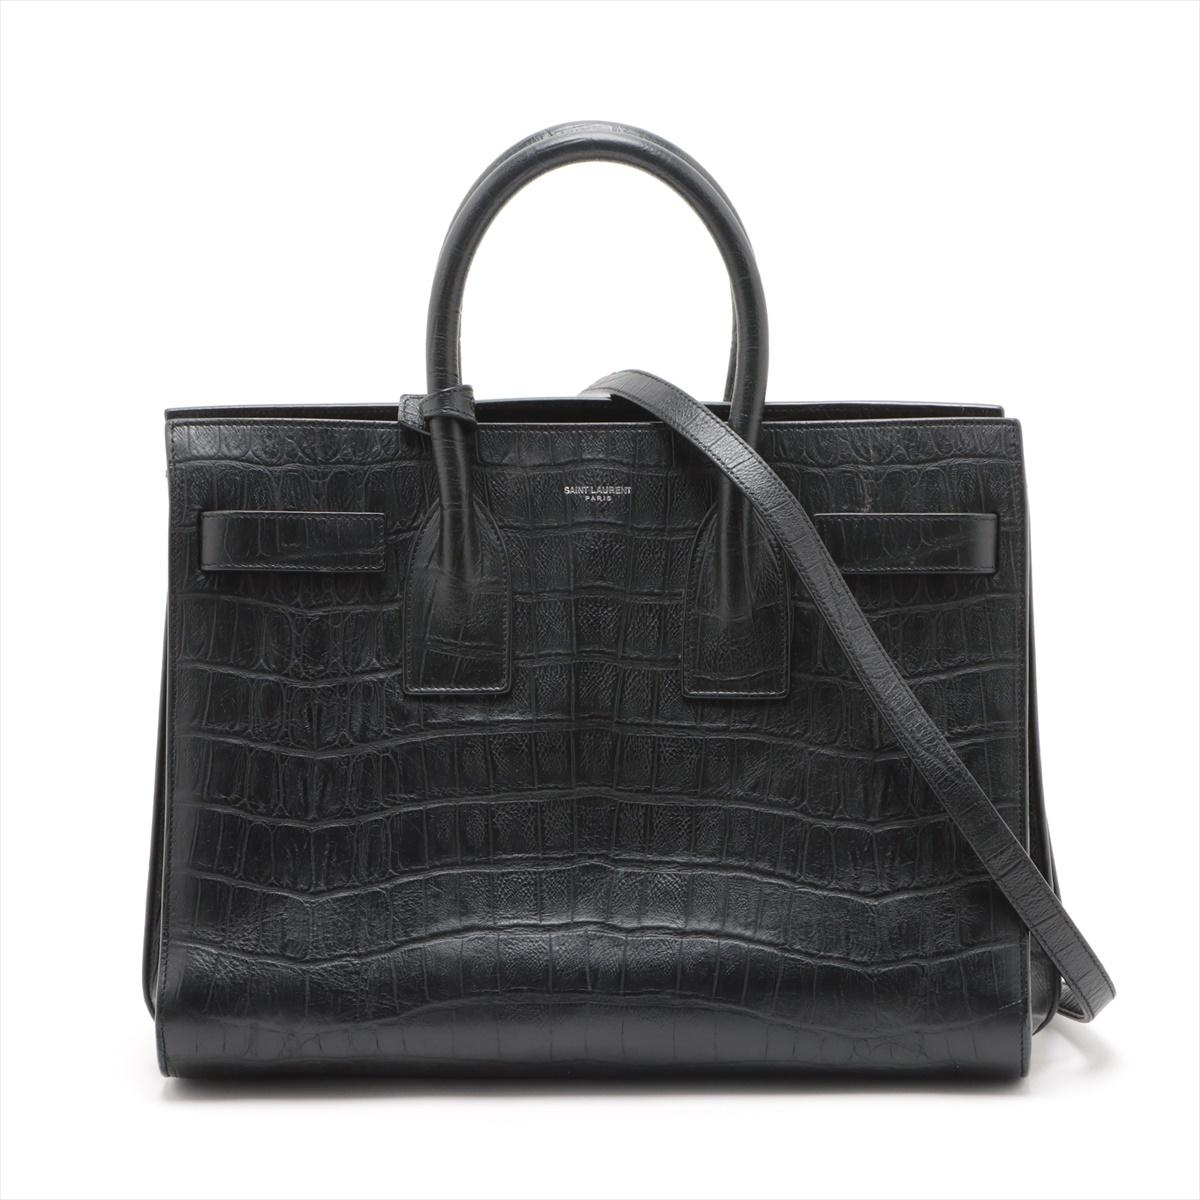 Die Saint Laurent Paris Sac de Jour Croc Two-Way Handtasche in Schwarz ist ein luxuriöses und vielseitiges Accessoire, das zeitlose Raffinesse ausstrahlt. Die aus exquisitem Leder mit Krokoprägung gefertigte Handtasche besticht durch eine